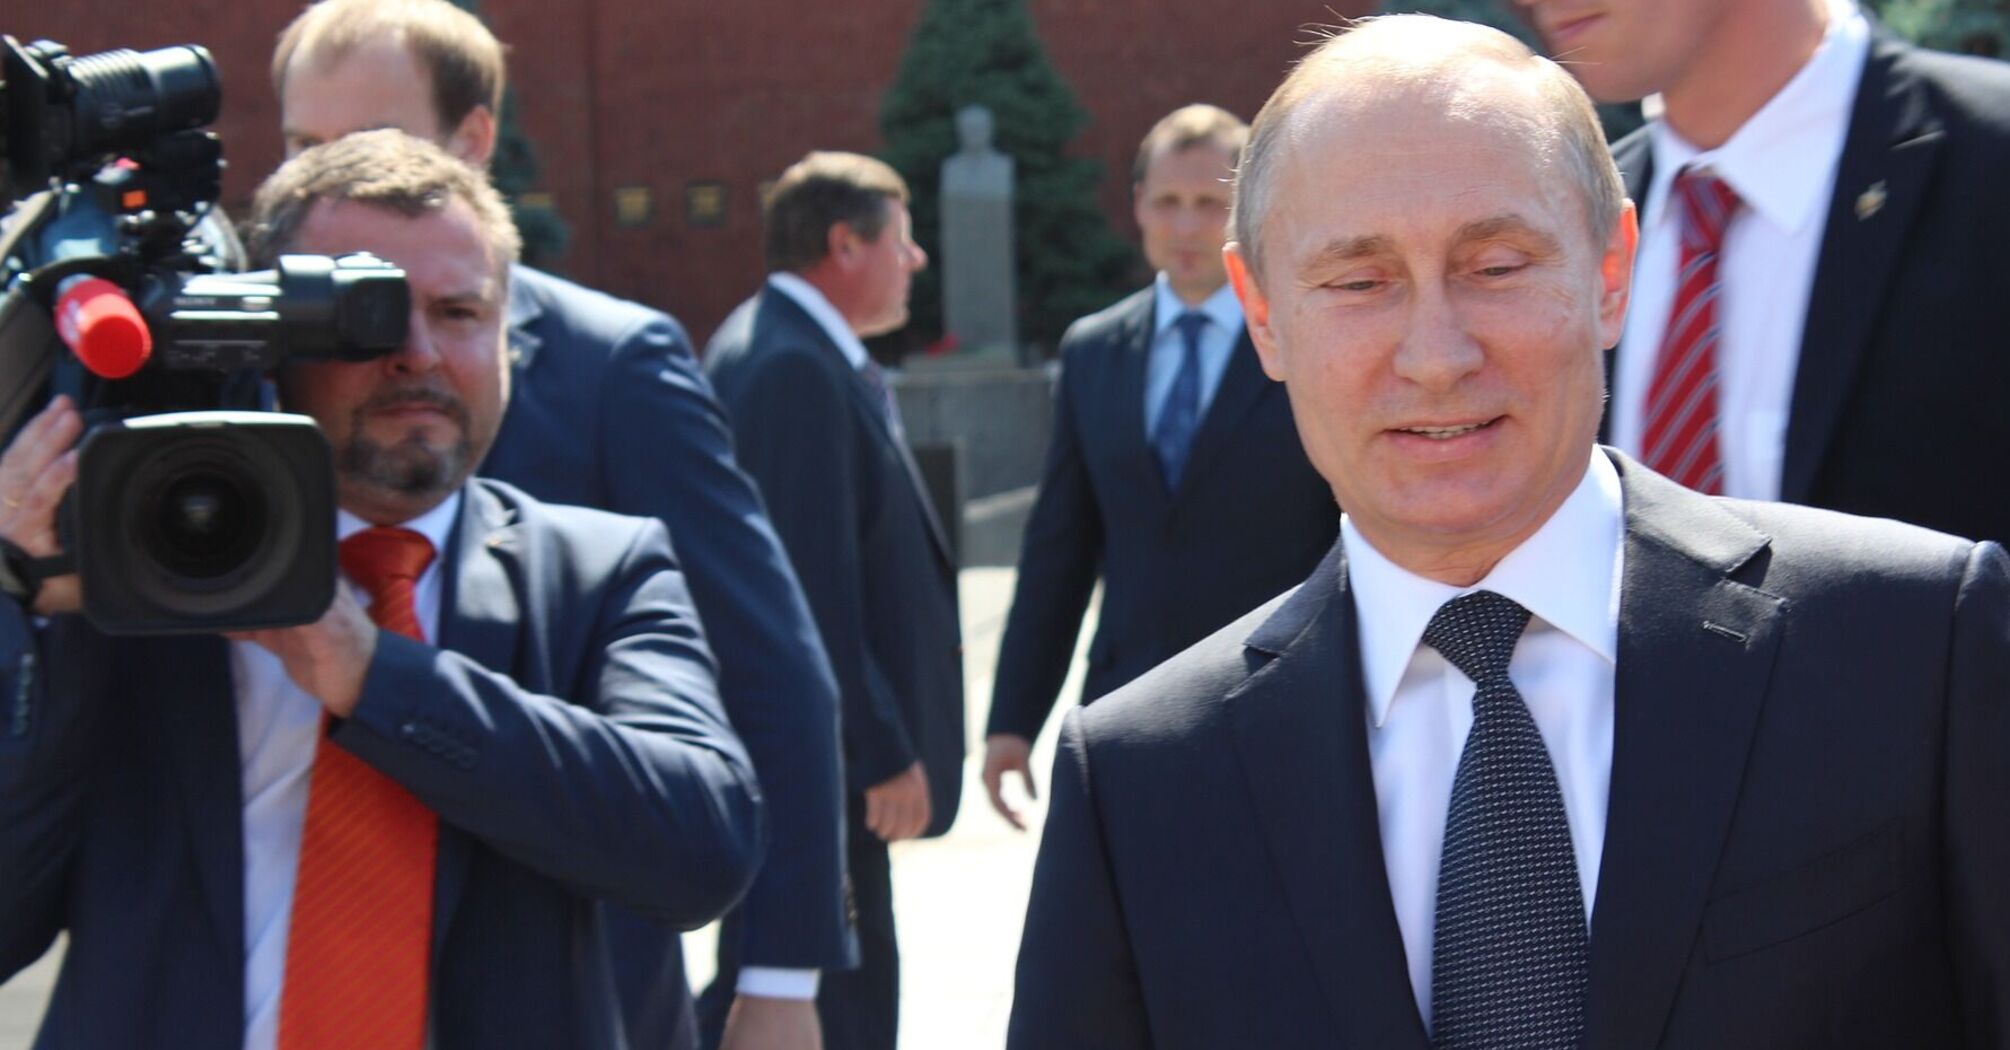 Британия ввела санкции против любовницы Путина